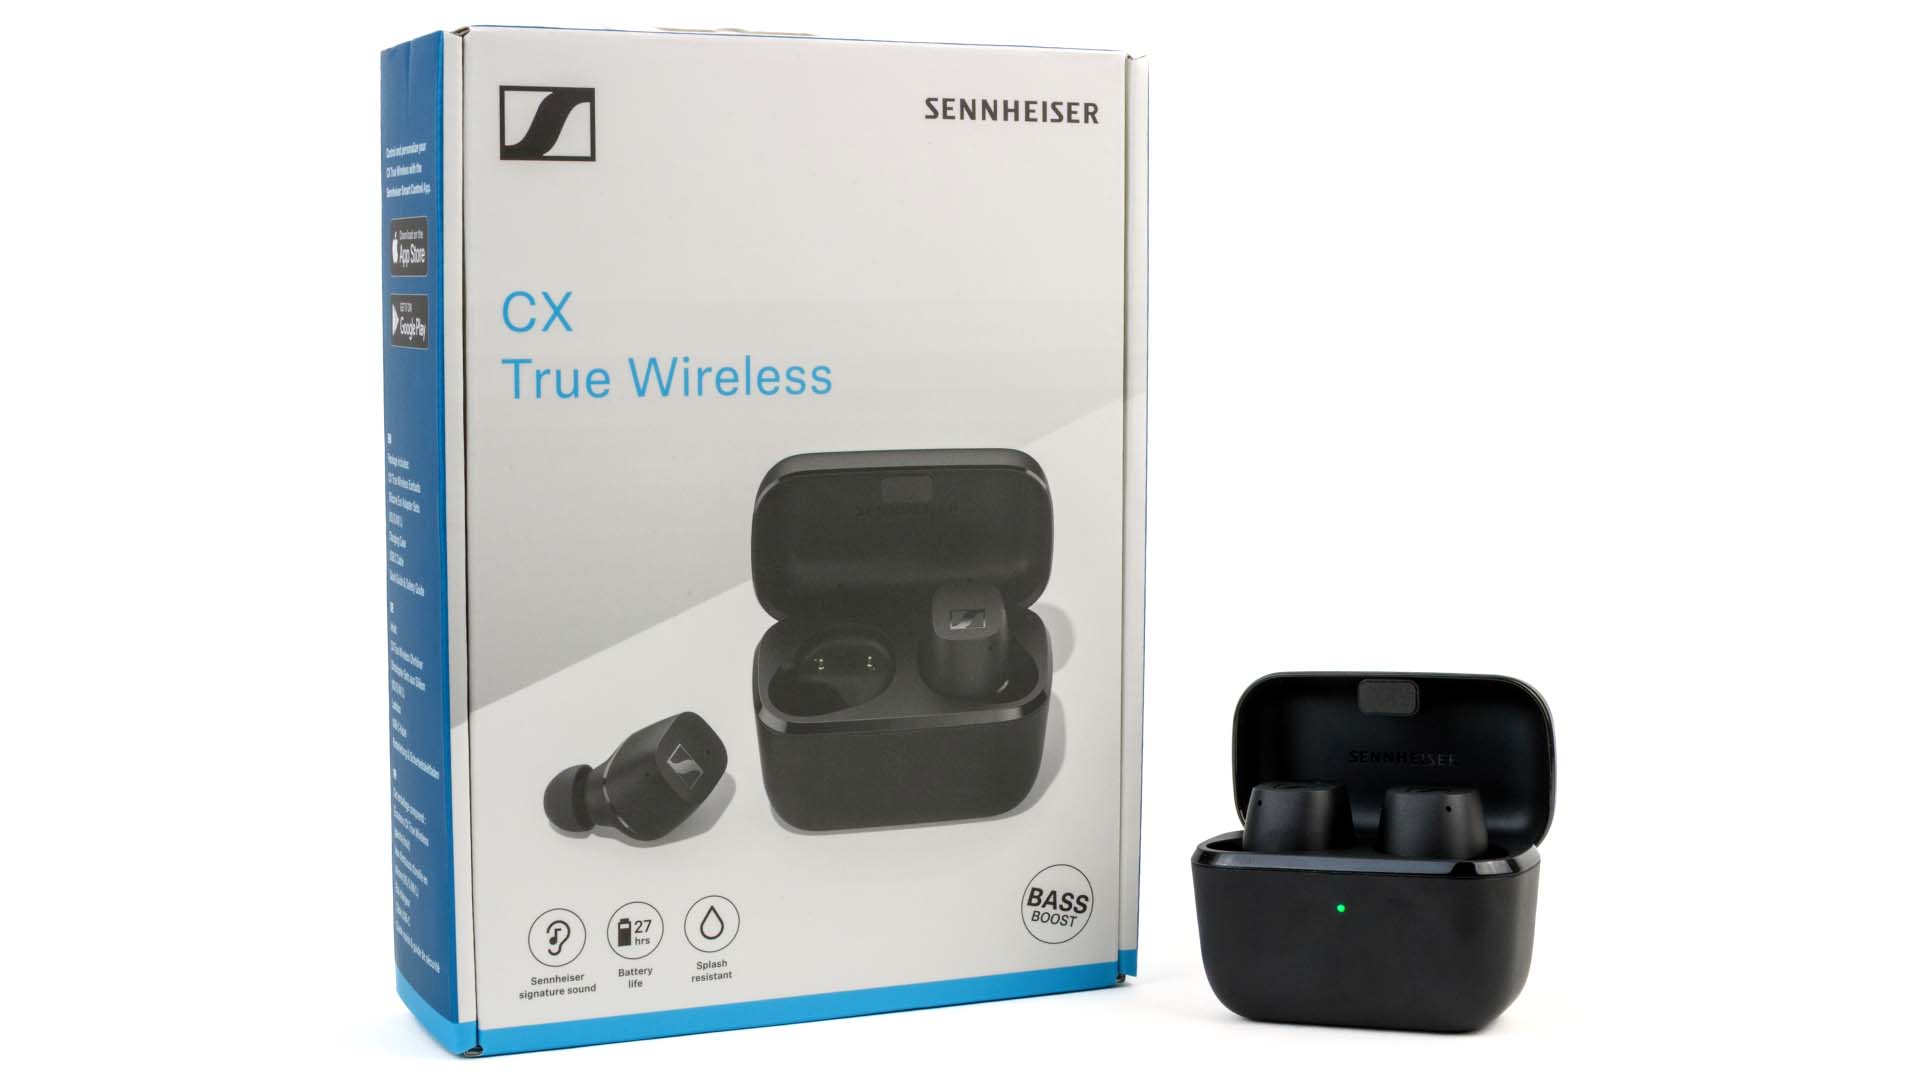 Sennheiser CX True Wireless review - Great-sounding in-ear